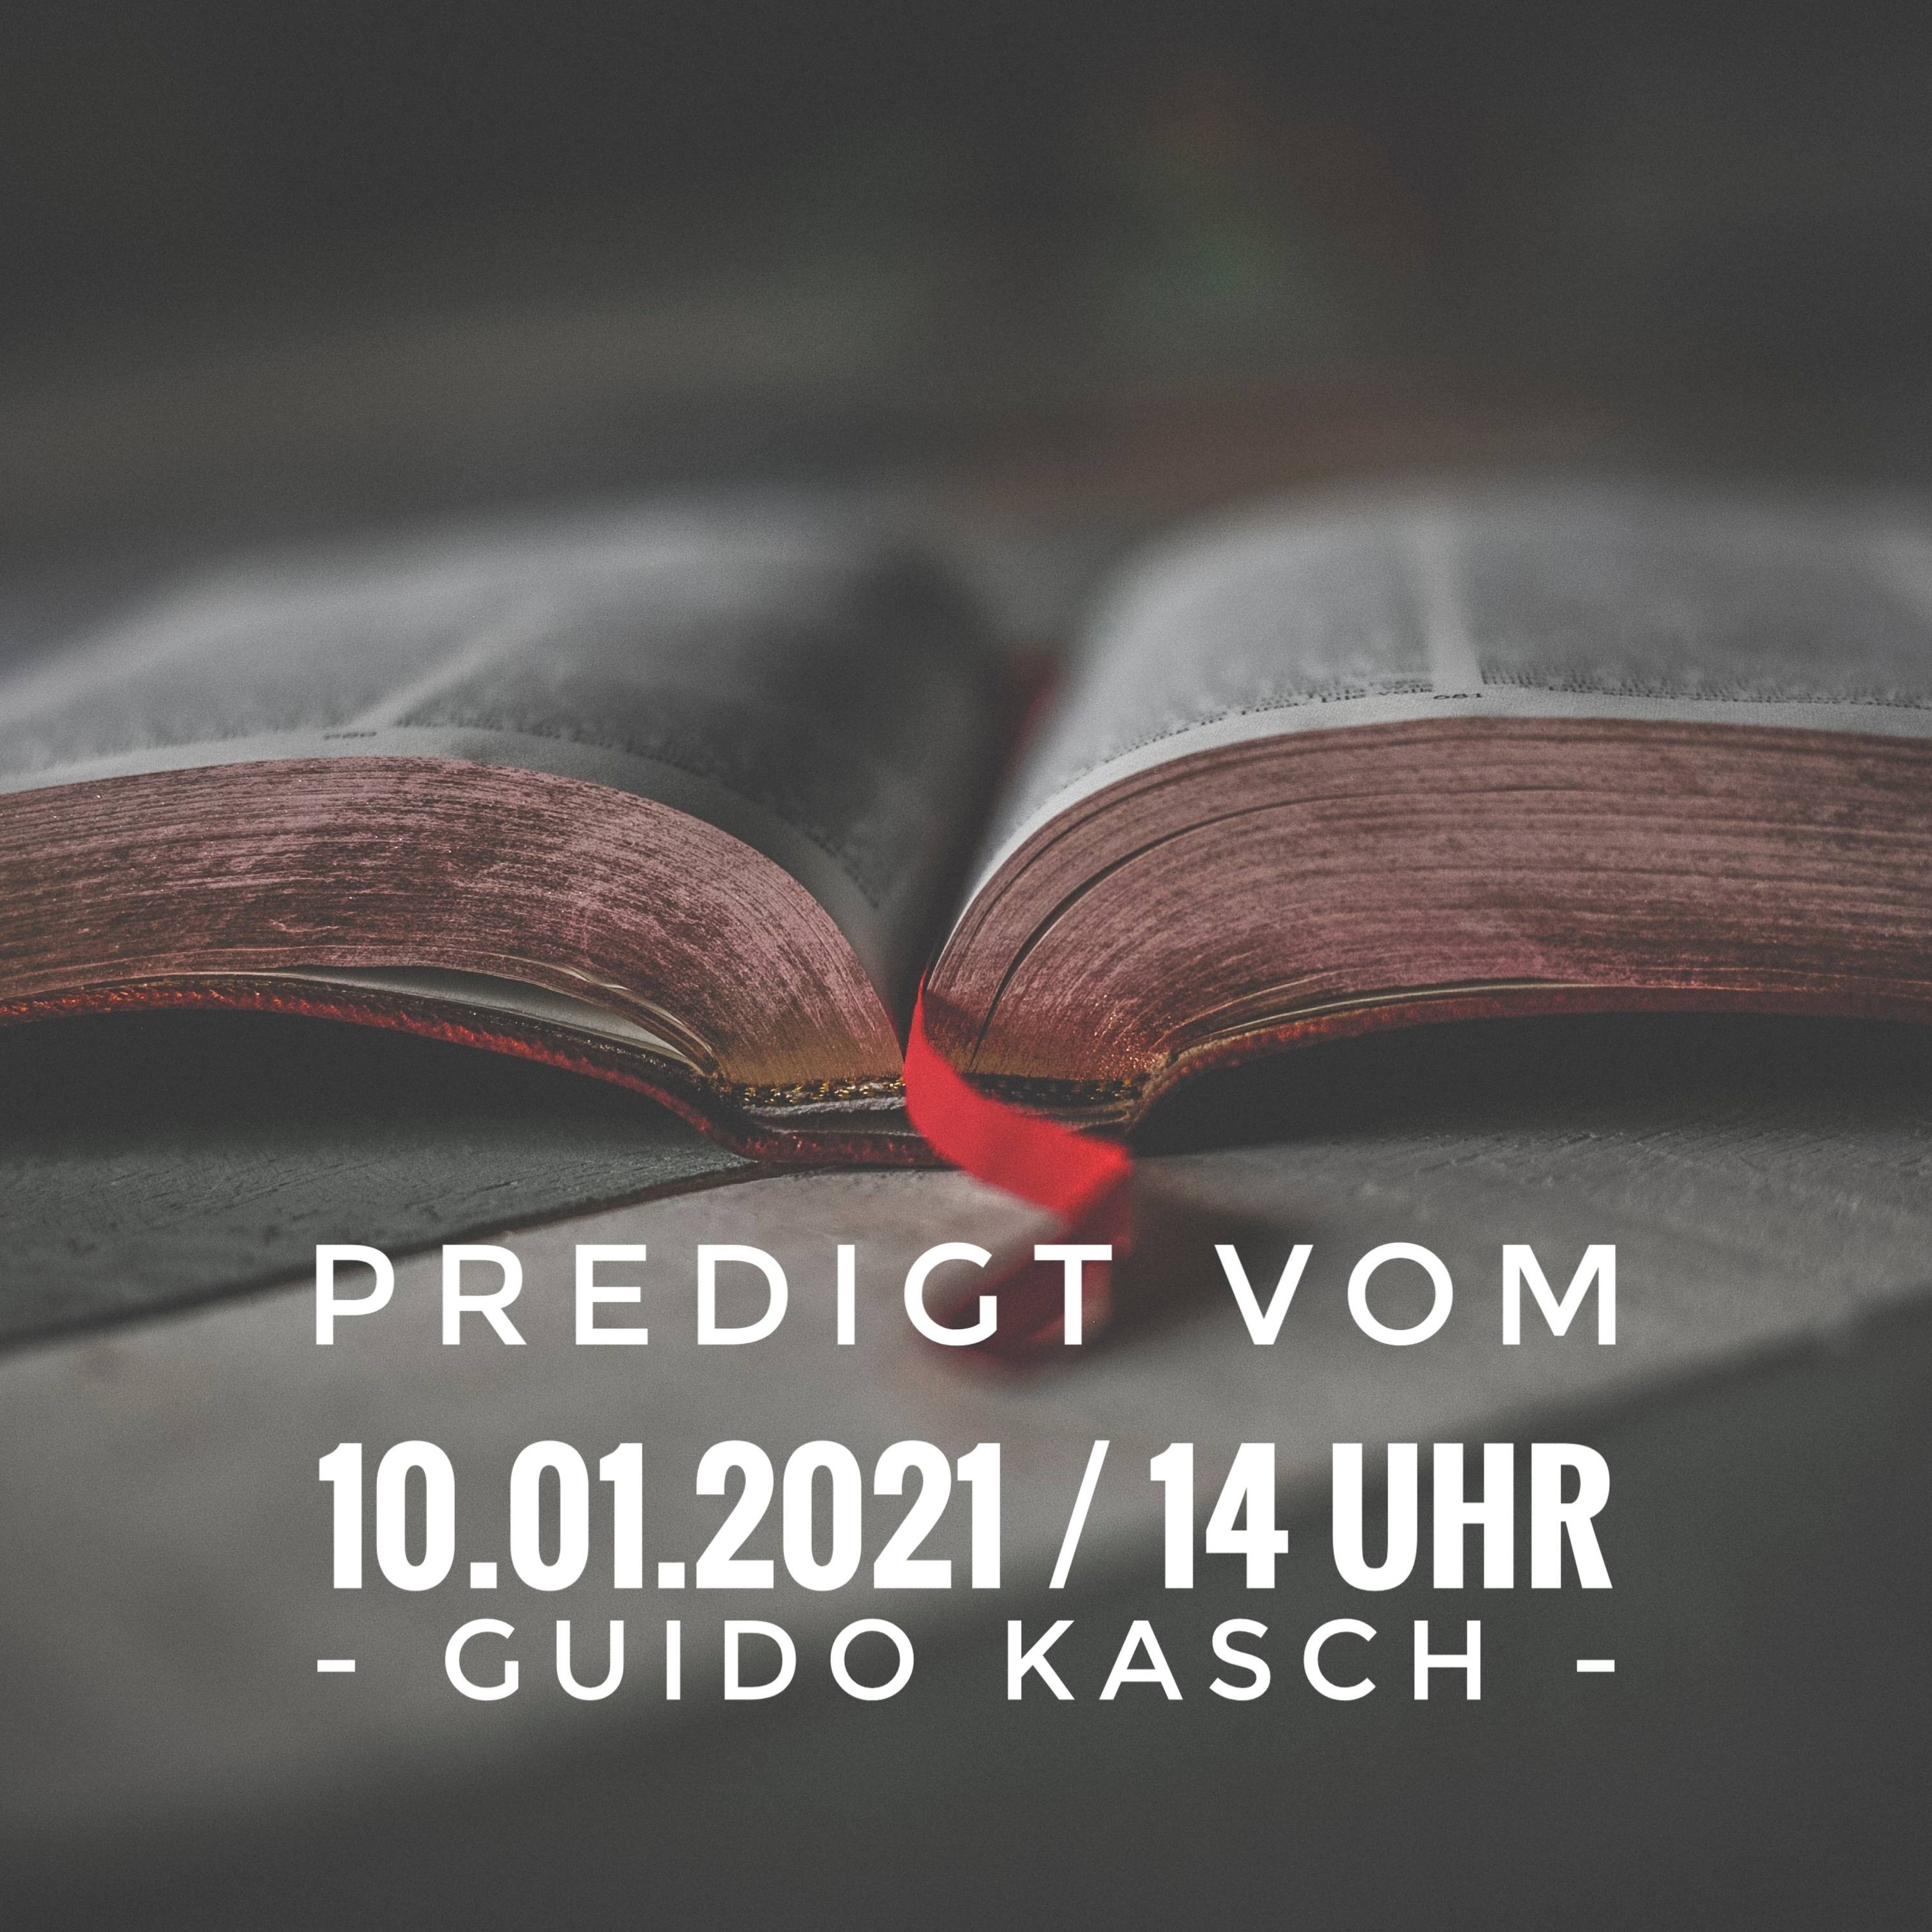 GUIDO KASCH - Immer in Gottes Gegenwart / 10.01.2021 / 14 Uhr  hero artwork